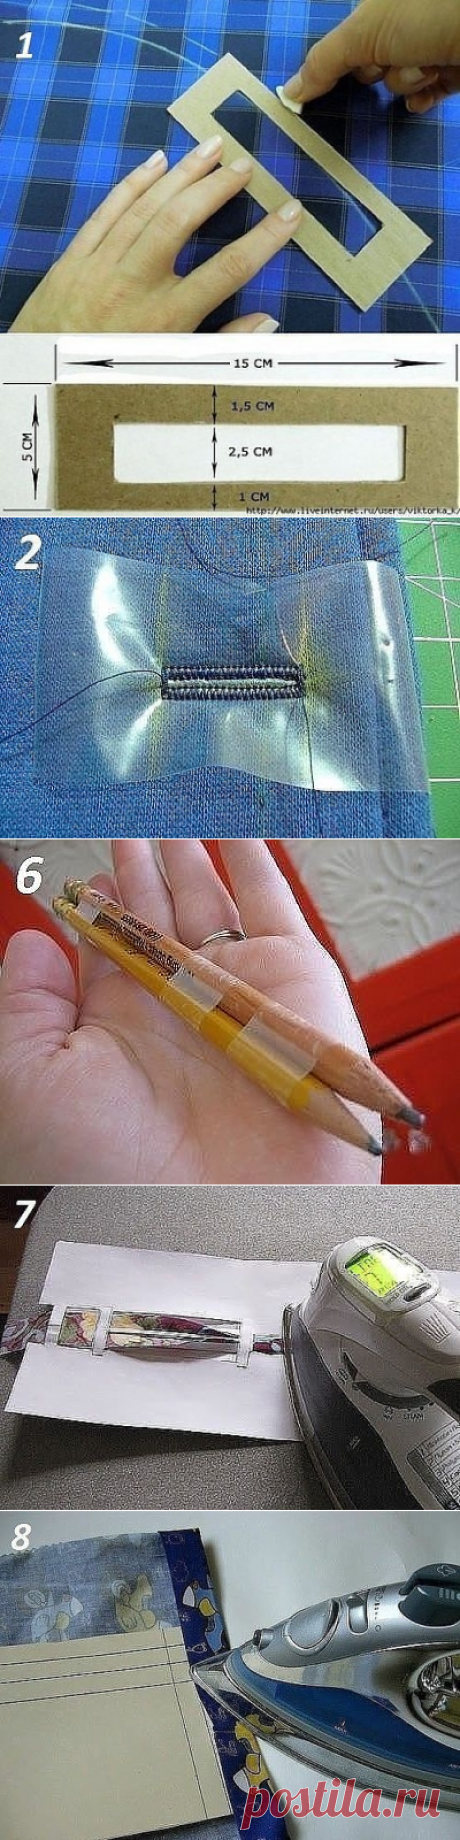 10 Полезных швейных приспособлений